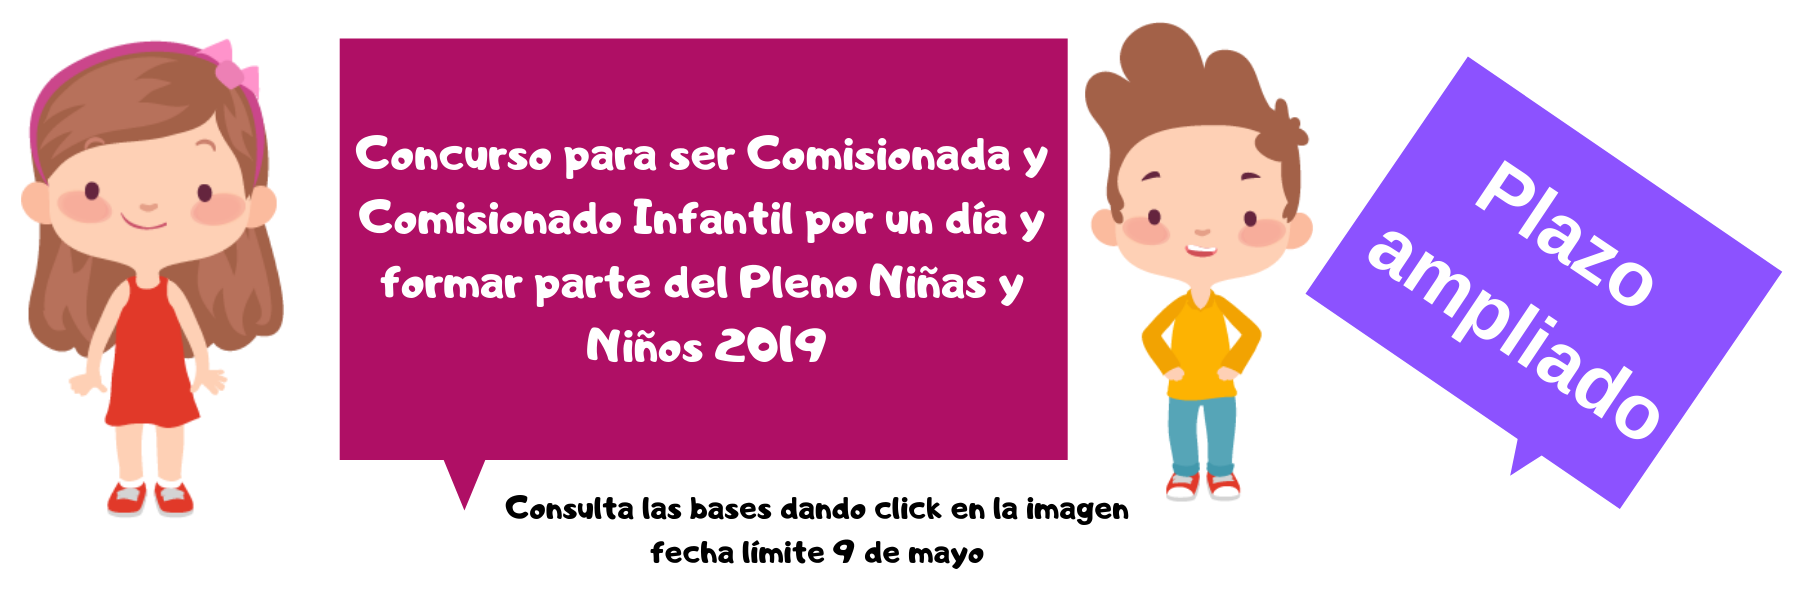 IMAIP anuncia ampliación de plazos del “Concurso para ser Comisionada y Comisionado Infantil por un día y formar parte del Pleno Niñas y Niños 2019”